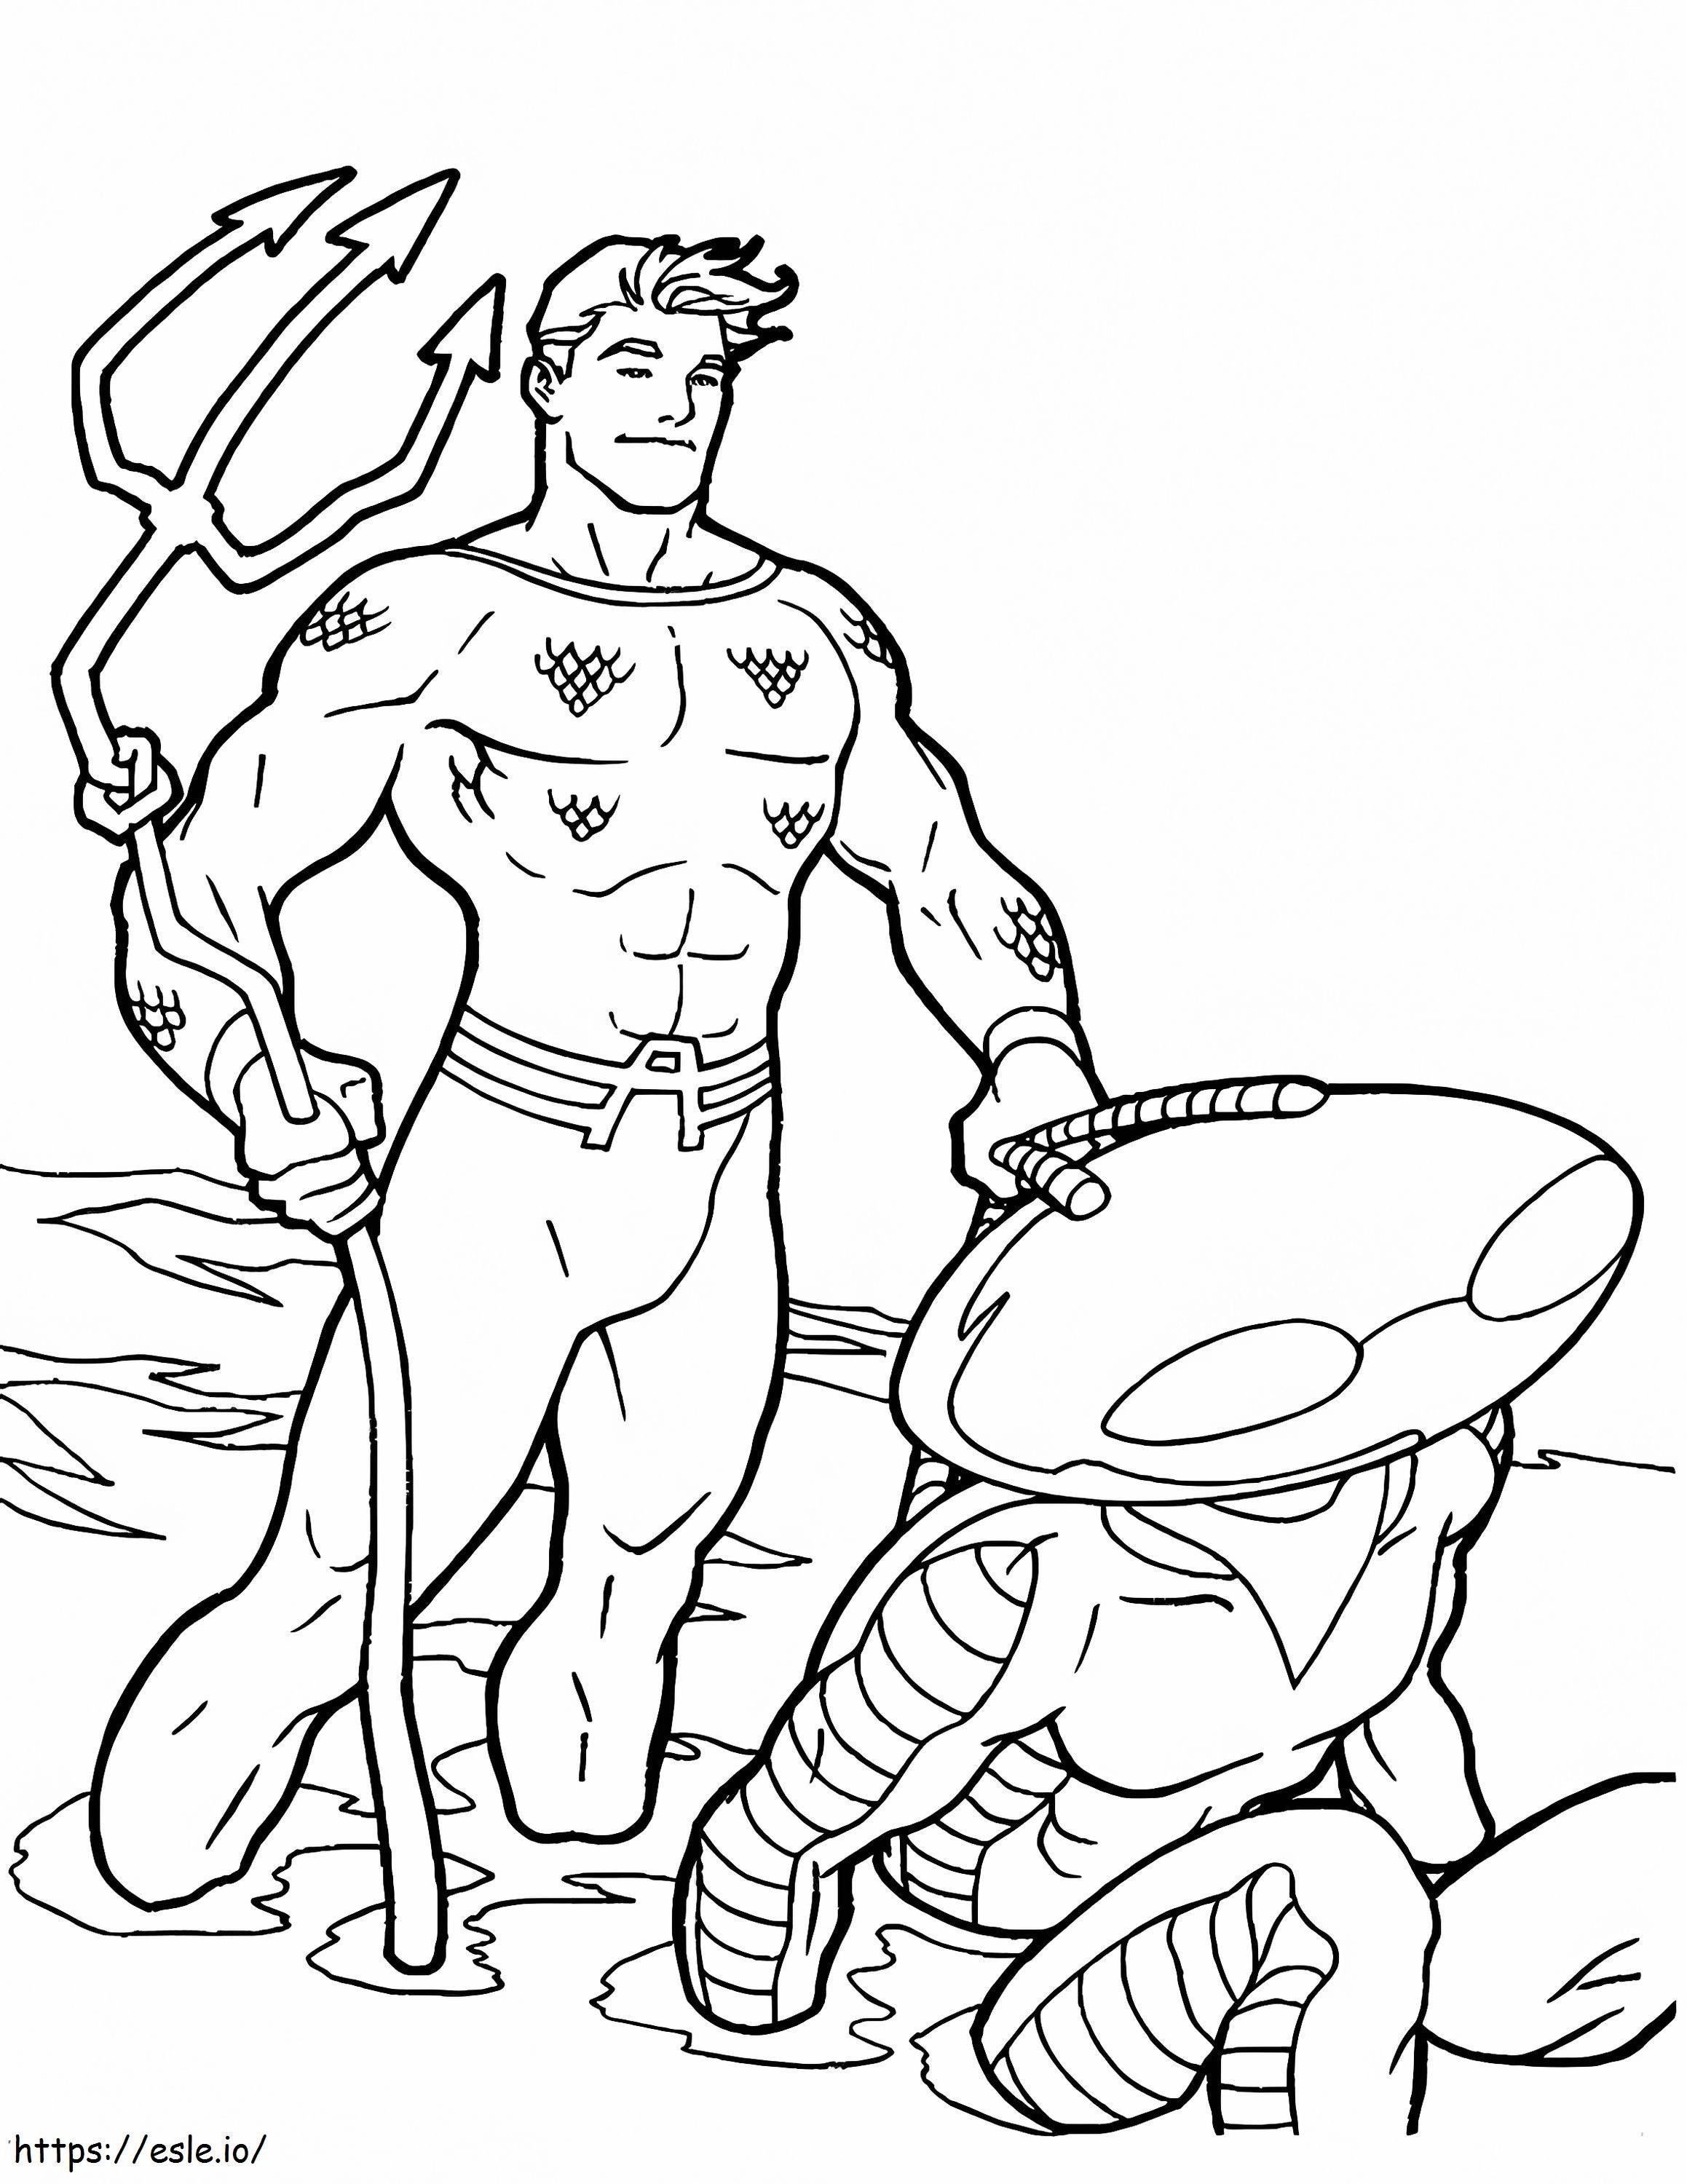 Aquaman 03 coloring page